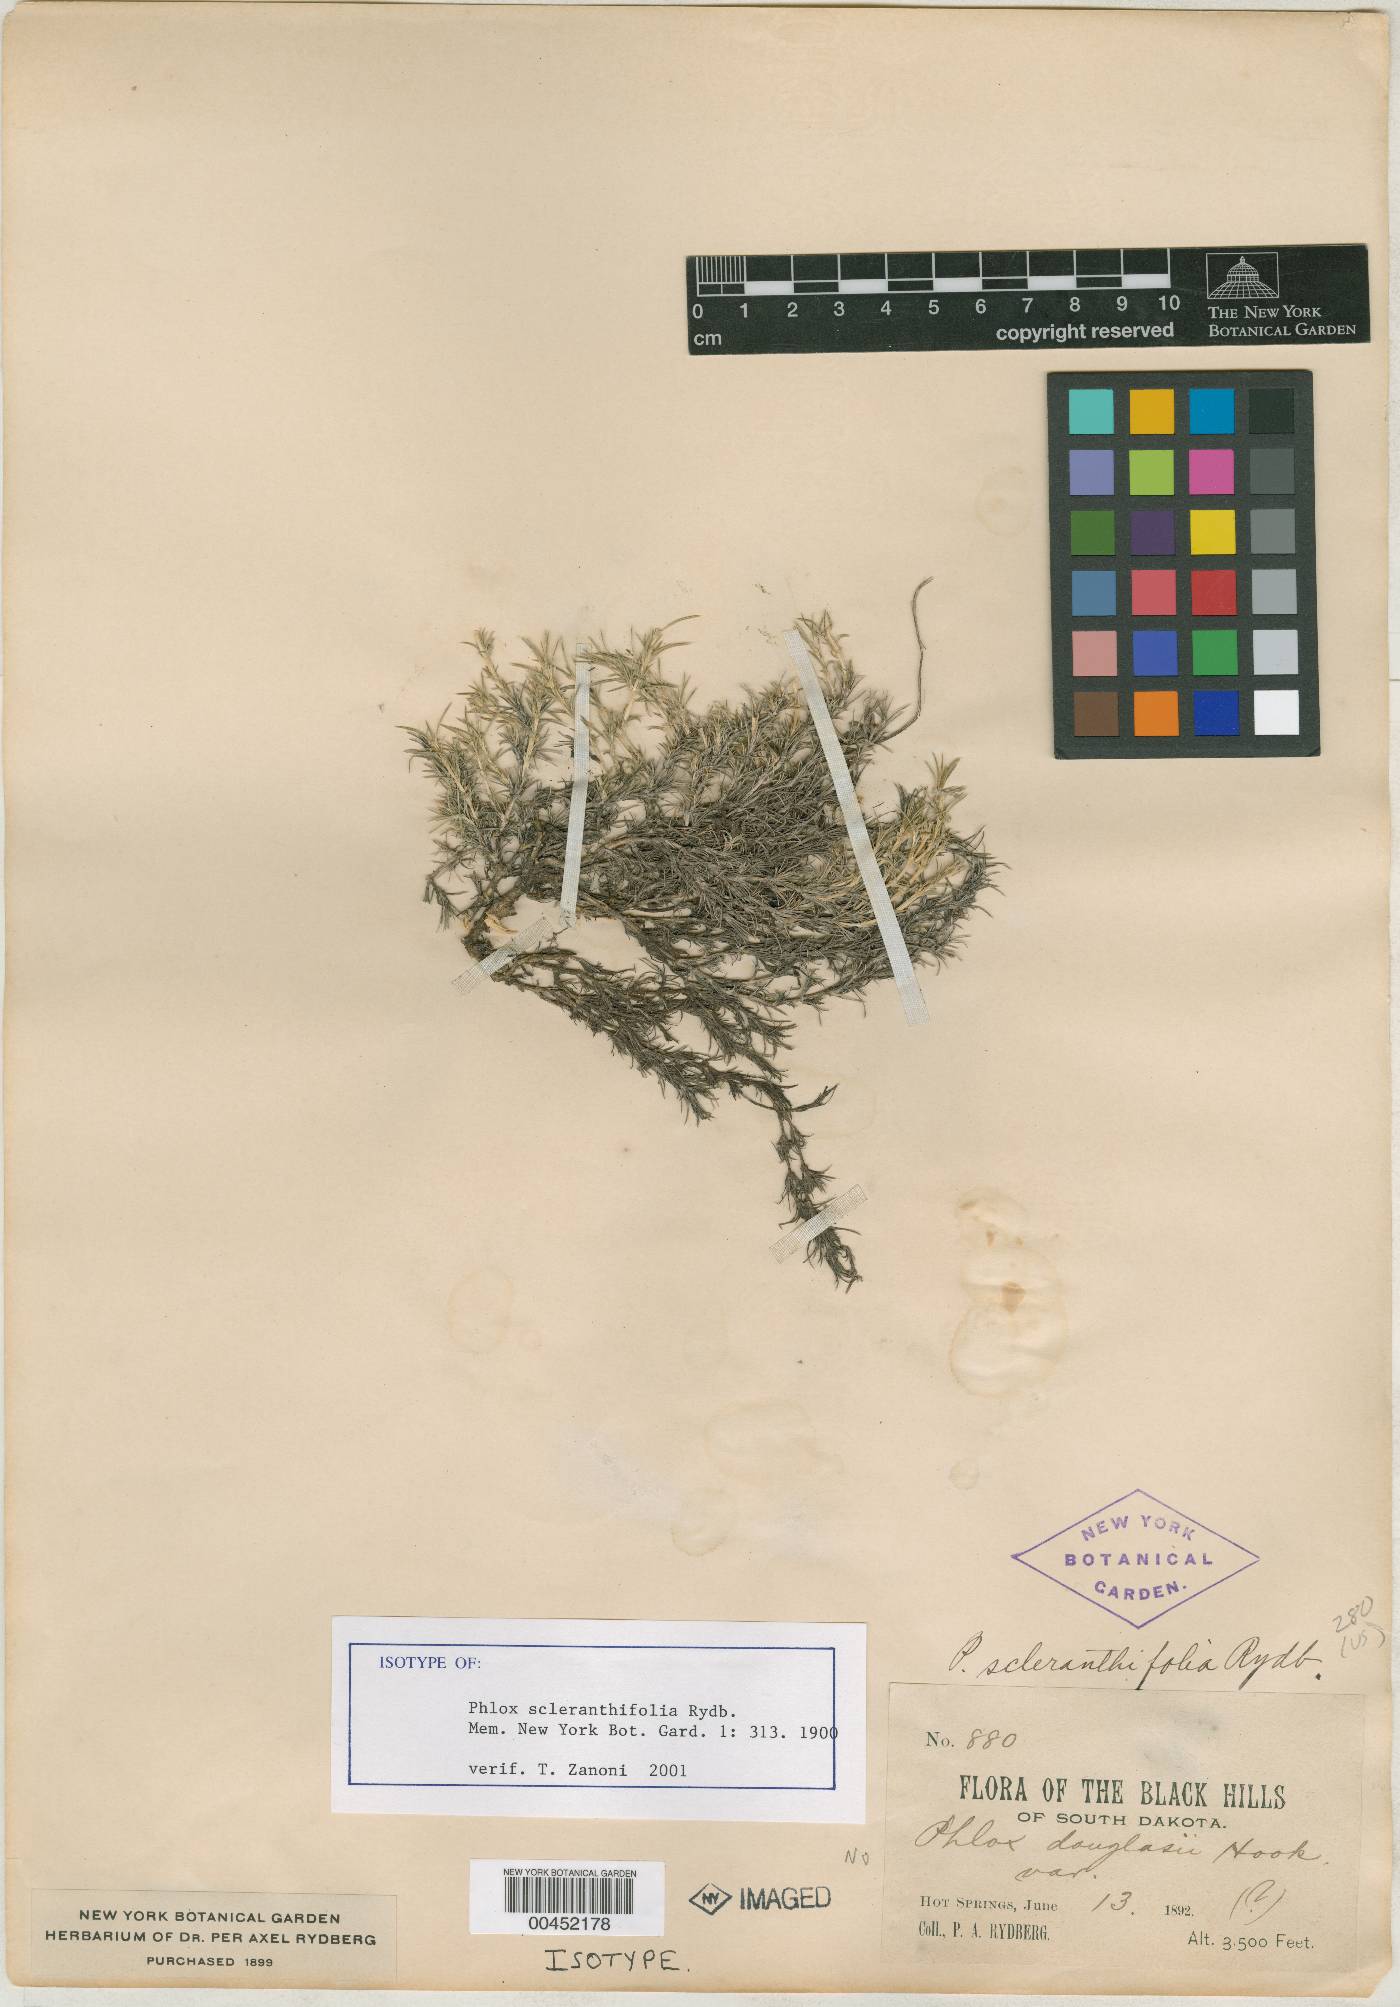 Phlox scleranthifolia image